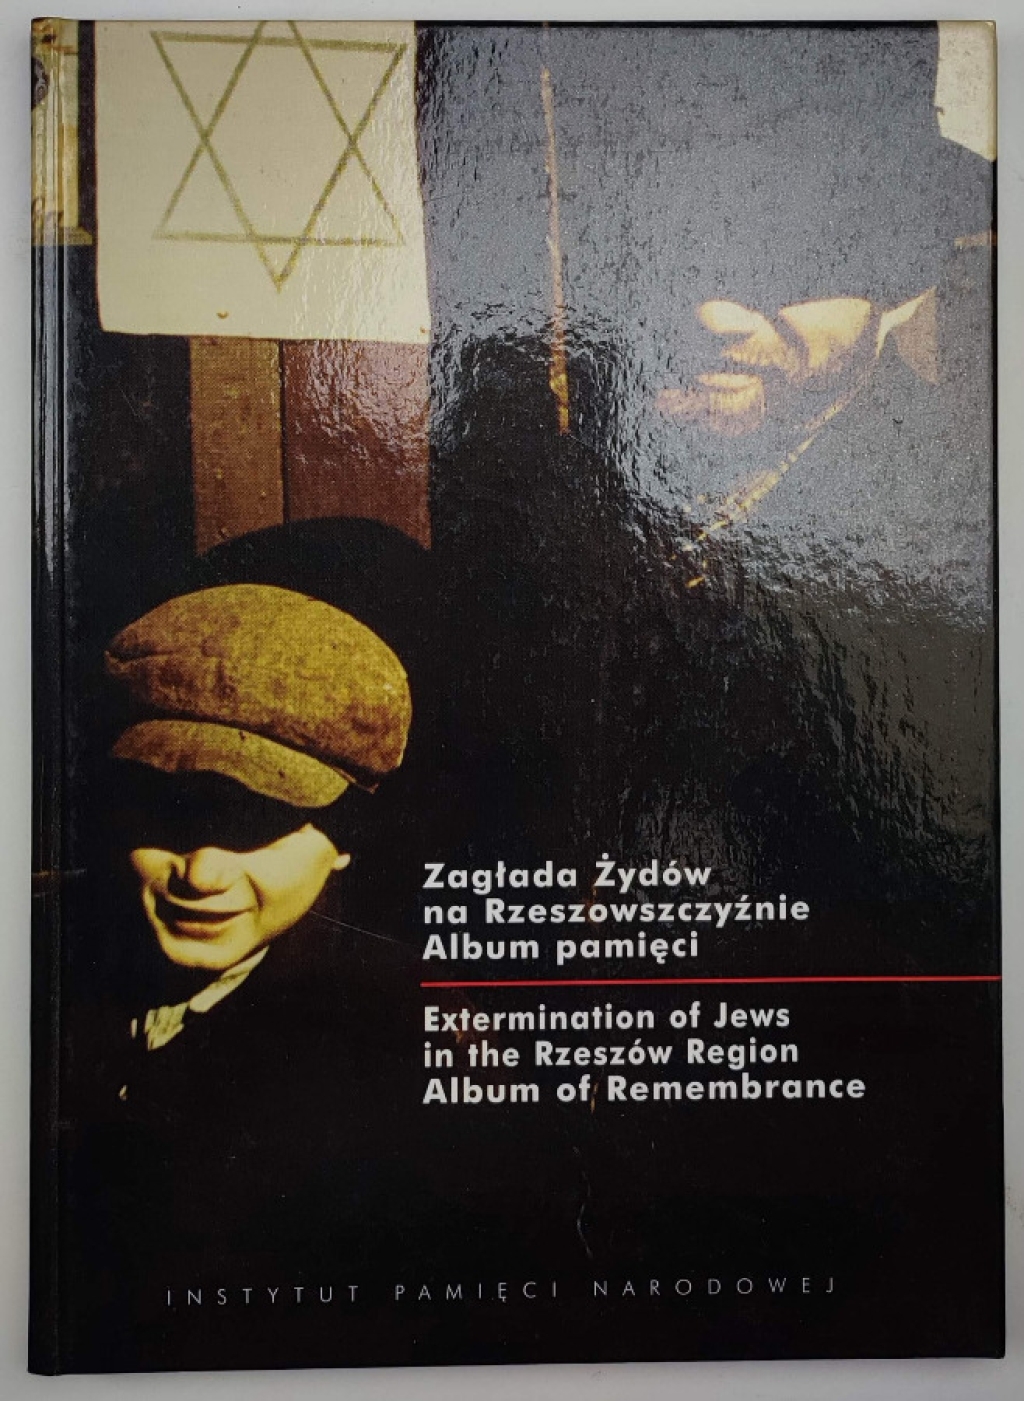 Zagłada Żydów na Rzeszowszczyźnie. Album pamięci. Extermination of Jews in the Rzeszów Region. Album of Remembrance